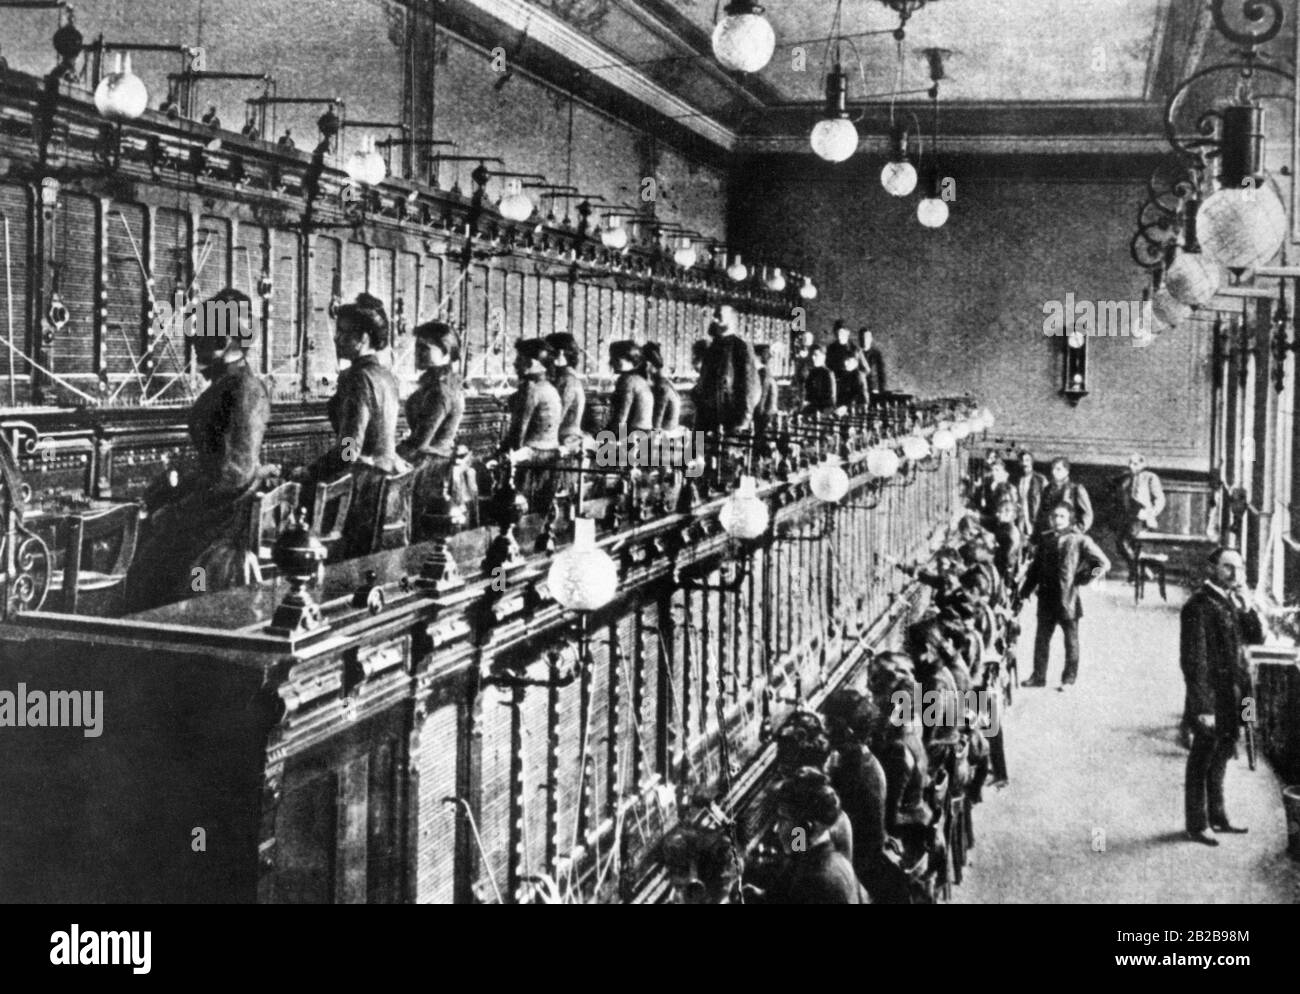 Die erste öffentliche Telefonbörse im Deutschen Reich wurde im Jahr 1881 in Berlin eröffnet. Das Foto zeigt die Telefonzentrale I., in der fast ausschließlich Frauen beschäftigt sind und männliche Postangestellte die Aufseher sind. Stockfoto